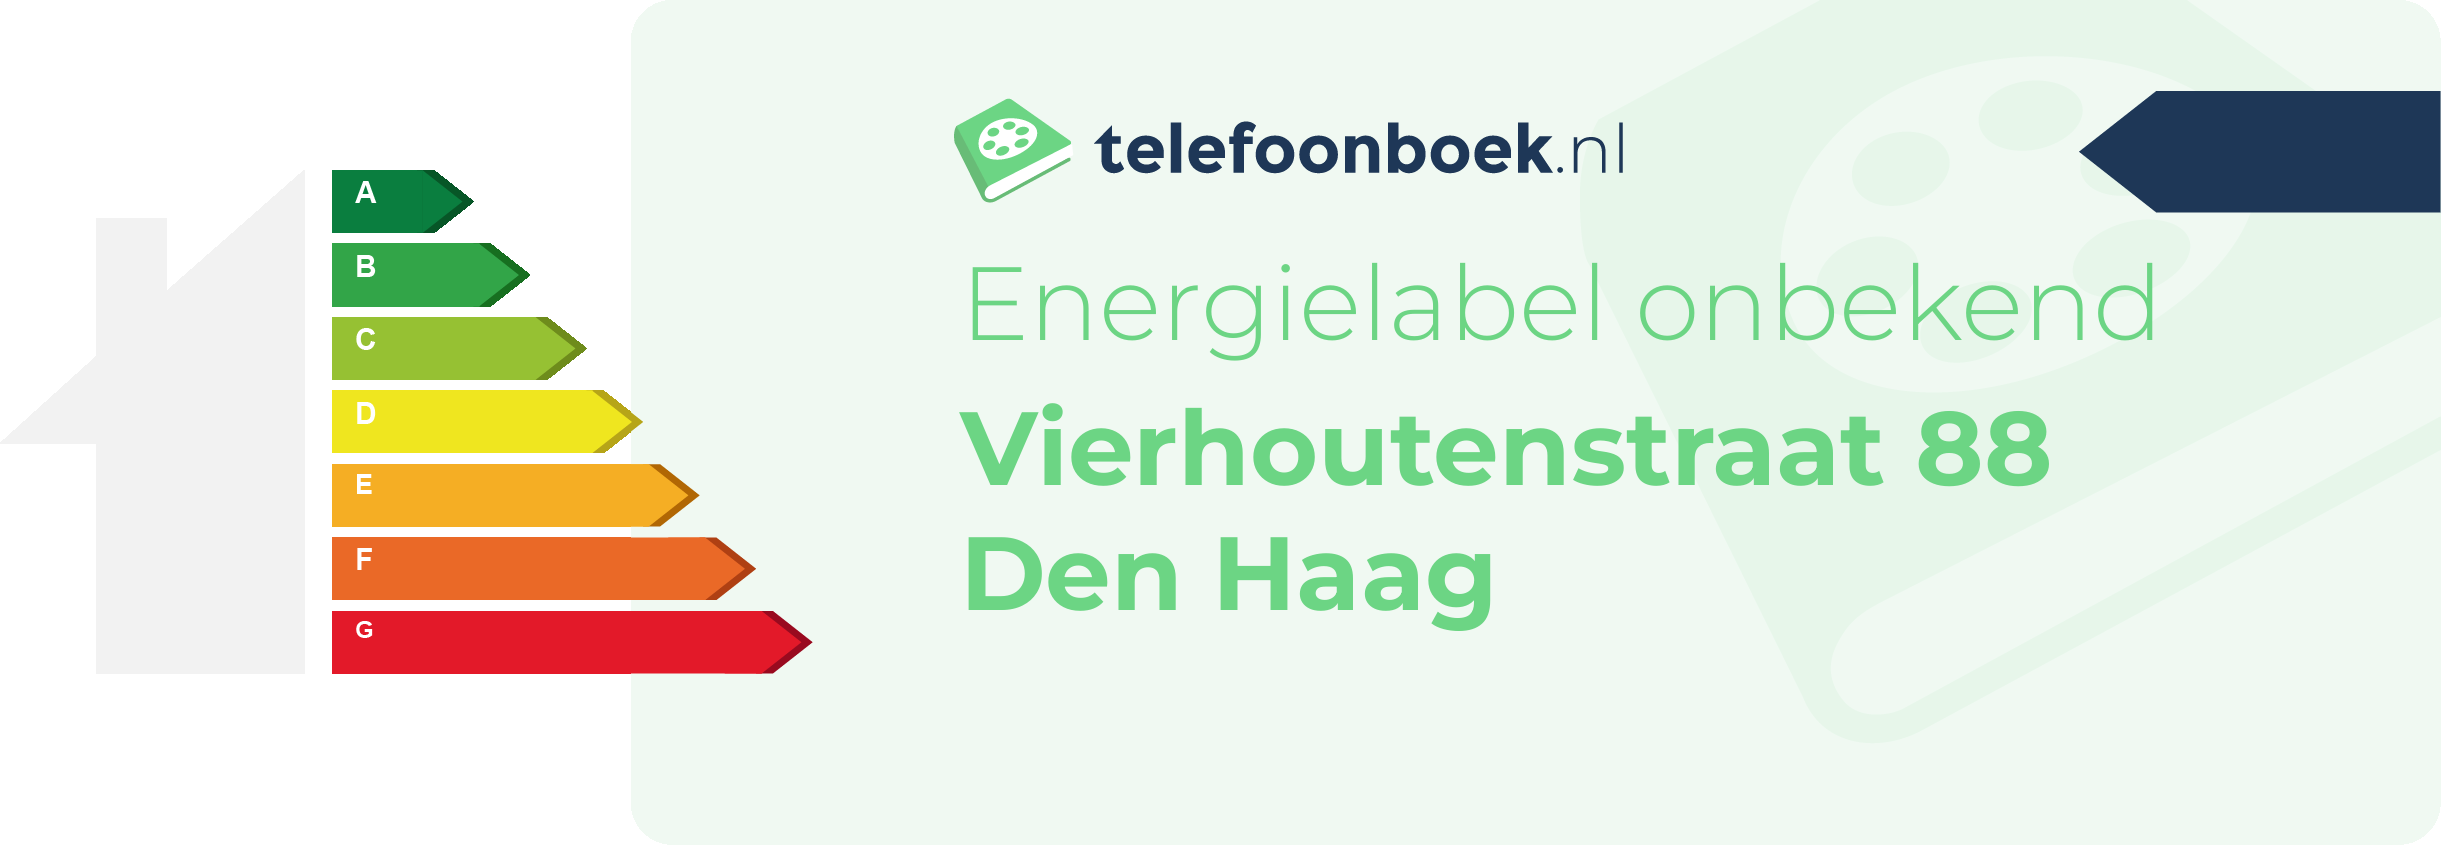 Energielabel Vierhoutenstraat 88 Den Haag